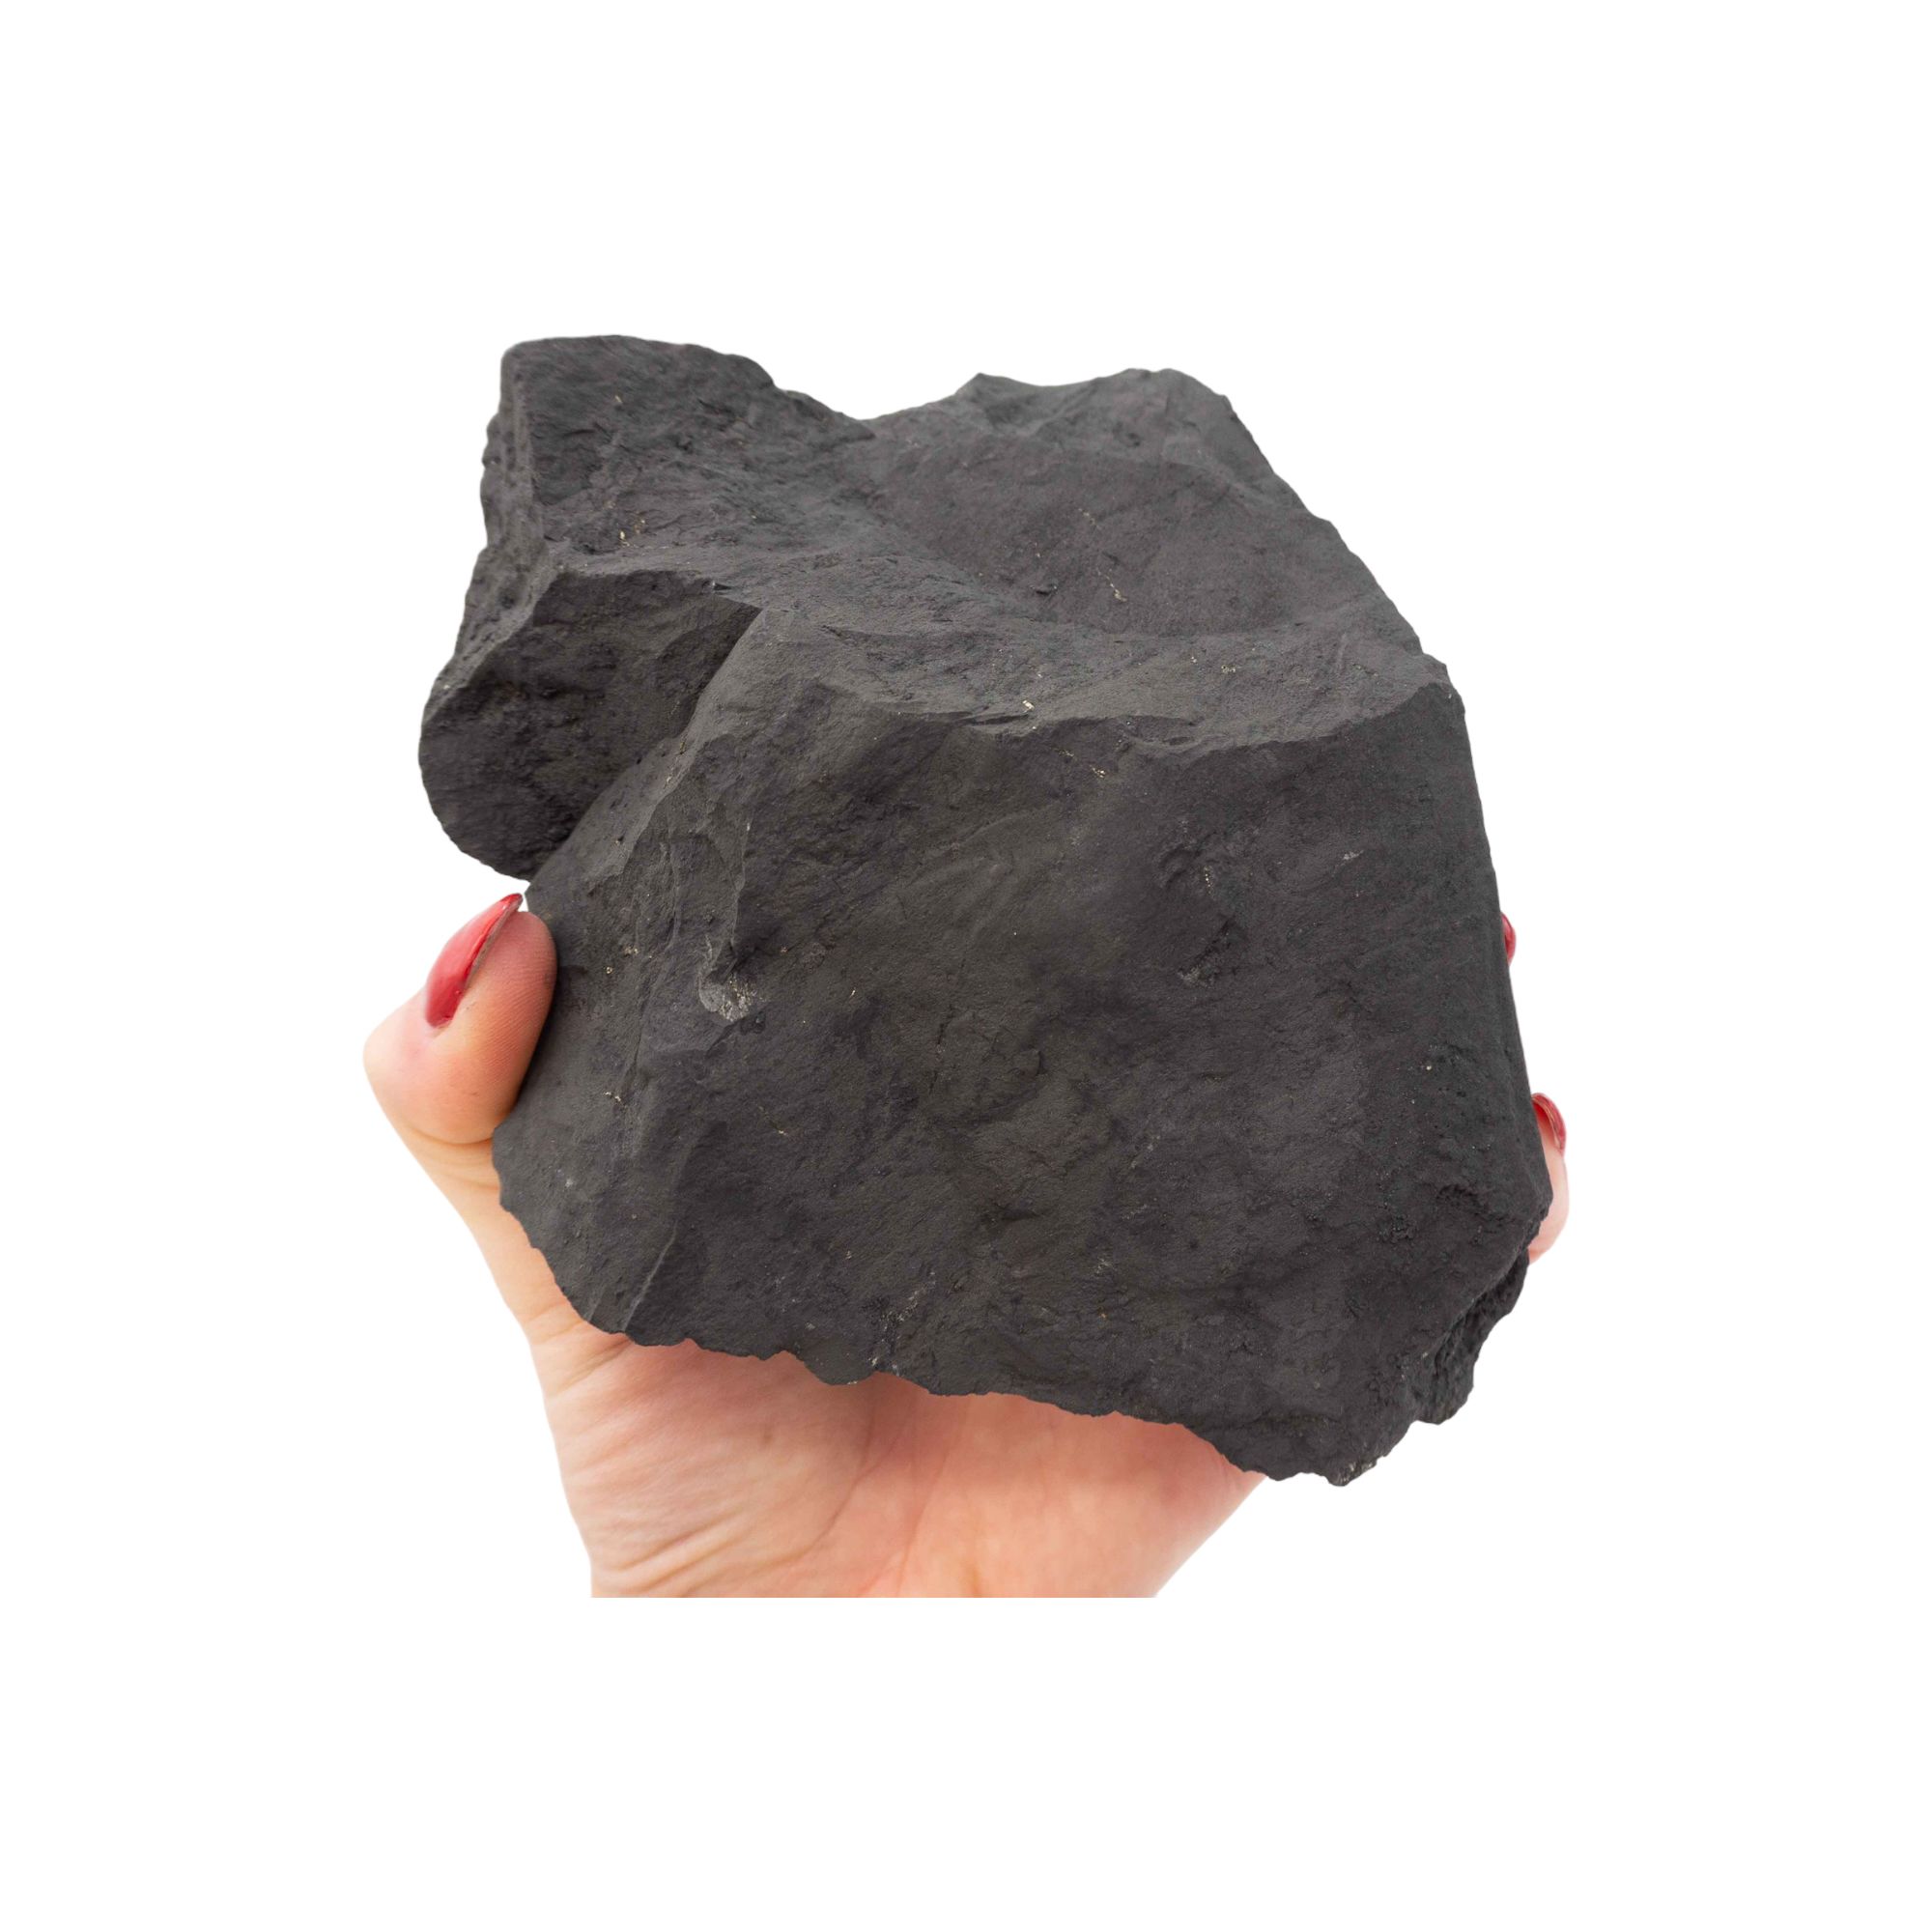 Comprar Shungit shungita piedra rodado pequeño calidad extra SHR2A